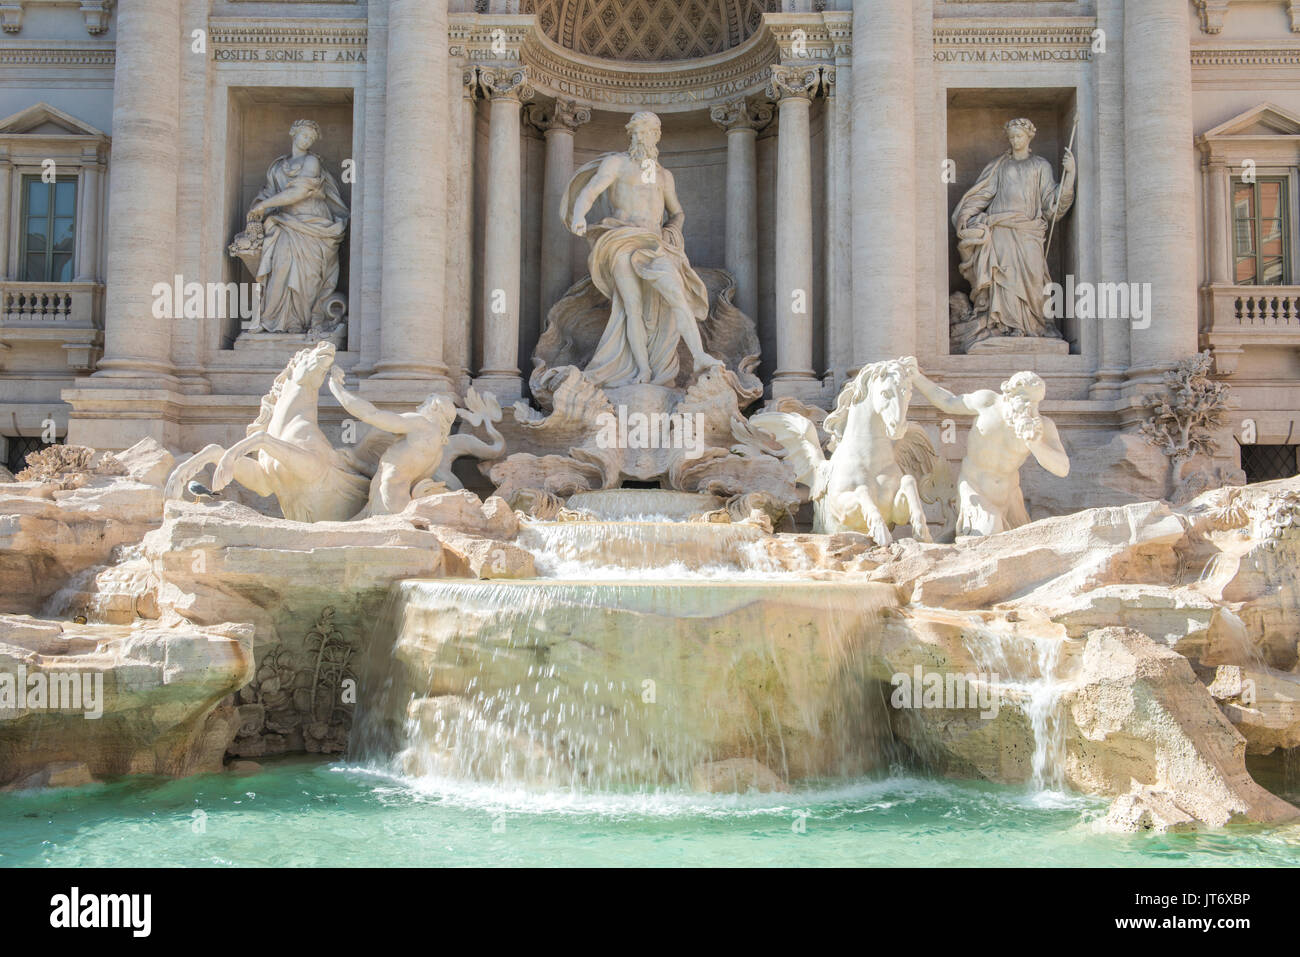 Der weltberühmte Trevi-Brunnen in Rom ist ein öffentlicher Brunnen im Jahre 1762 erbaut. Aus Stein sie ist 26,3 Meter hoch und 49,15 Meter breit. Stockfoto